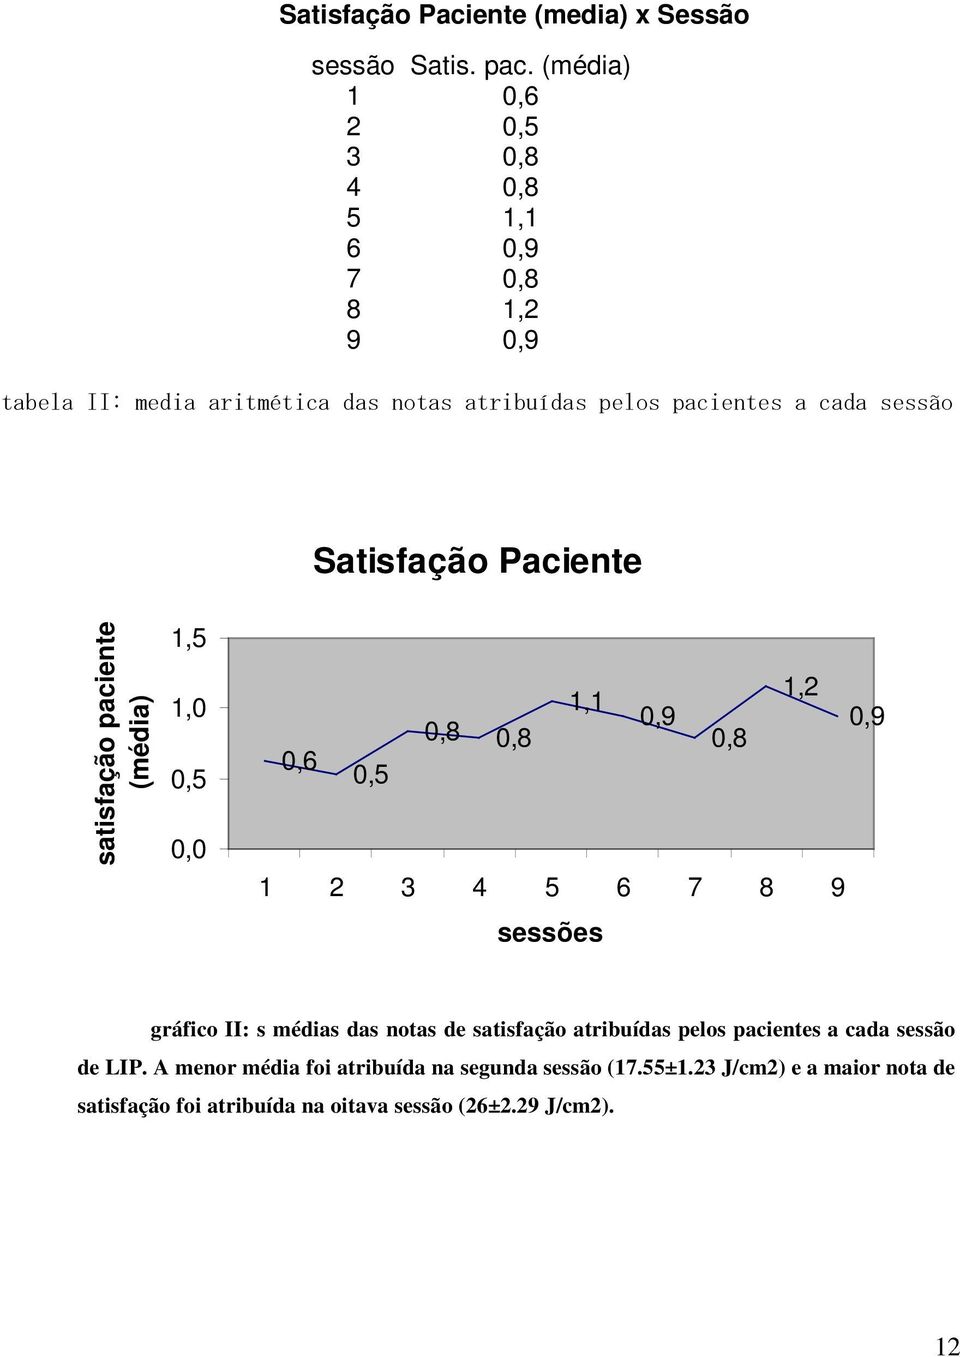 Satisfação Paciente satisfação paciente (média) 1,5 1,0 0,5 0,0 1,2 1,1 0,9 0,9 0,8 0,8 0,8 0,6 0,5 1 2 3 4 5 6 7 8 9 sessões gráfico II: s